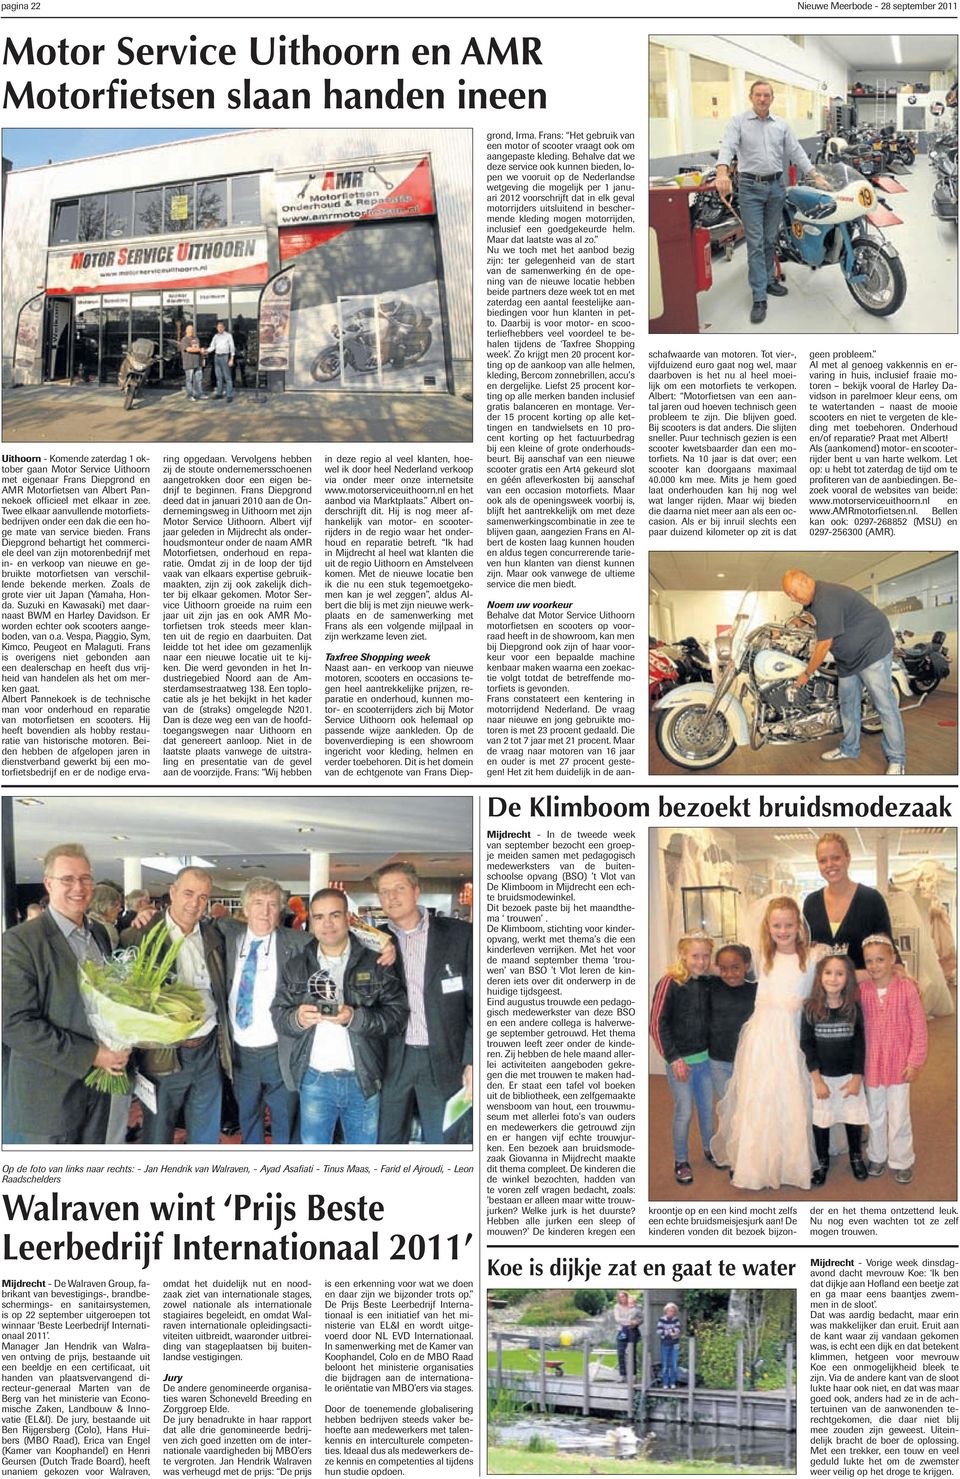 Frans Diepgrond behartigt het commerciele deel van zijn motorenbedrijf met in- en verkoop van nieuwe en gebruikte motorfietsen van verschillende bekende merken.